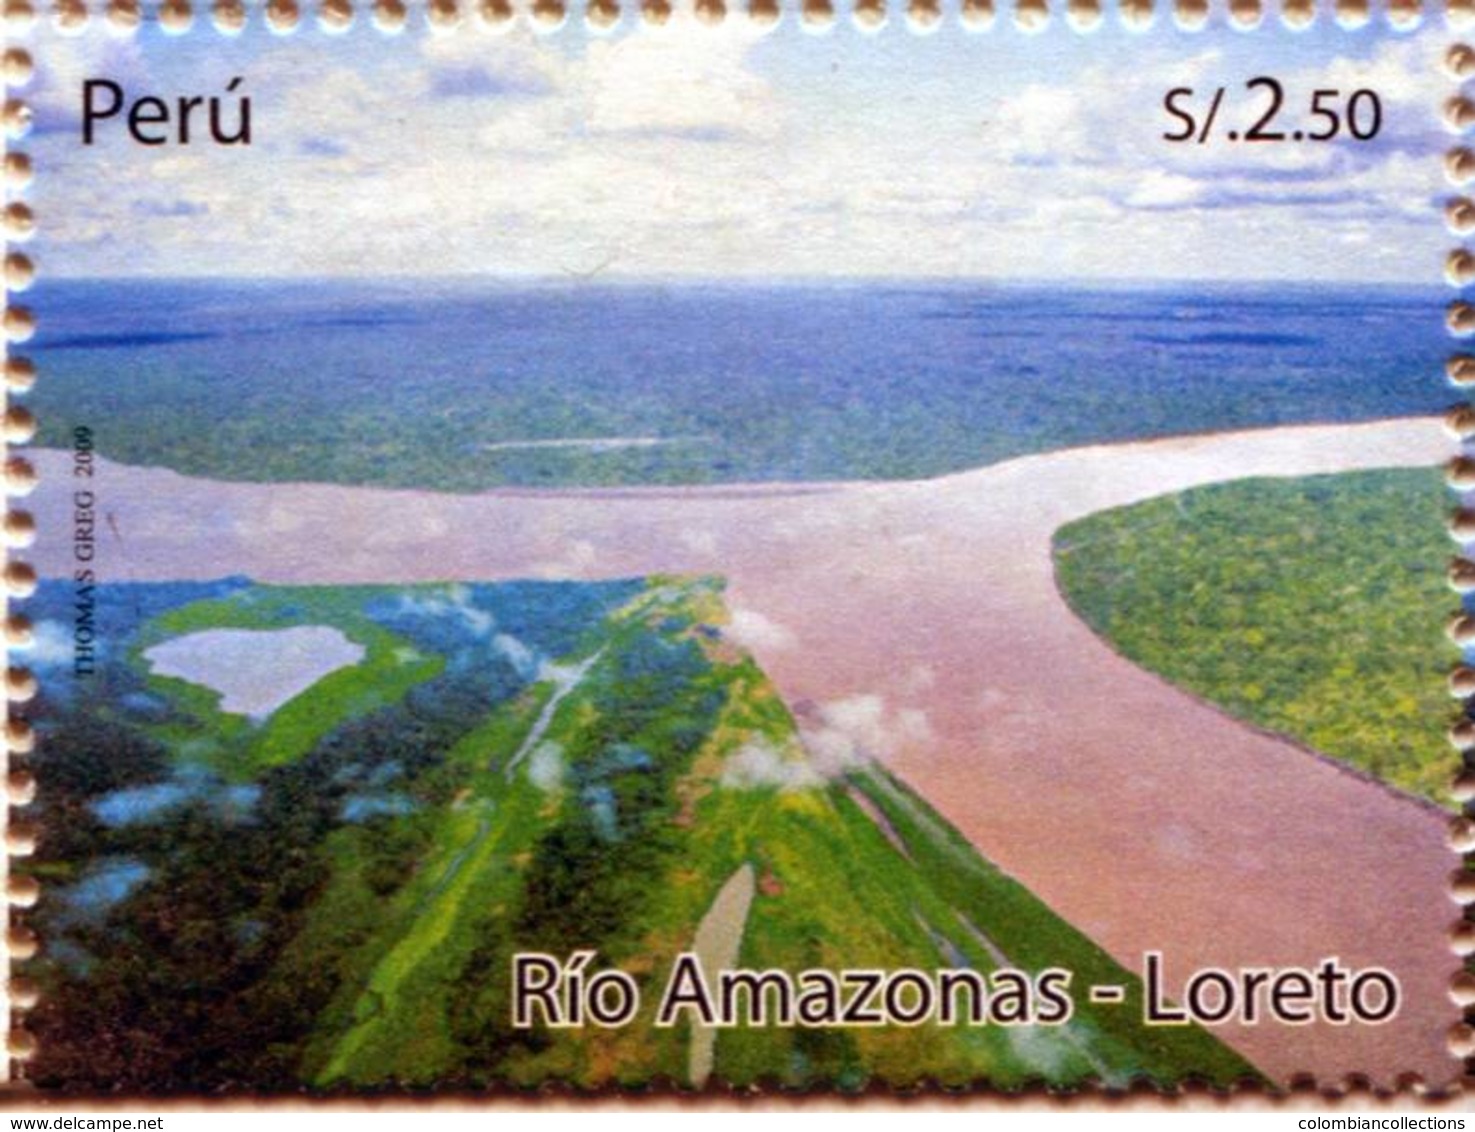 Lote P2009-13, Peru, 2009, Sello, Stamp, Rio Amazonas, Loreto, River, Forest, Tree - Peru